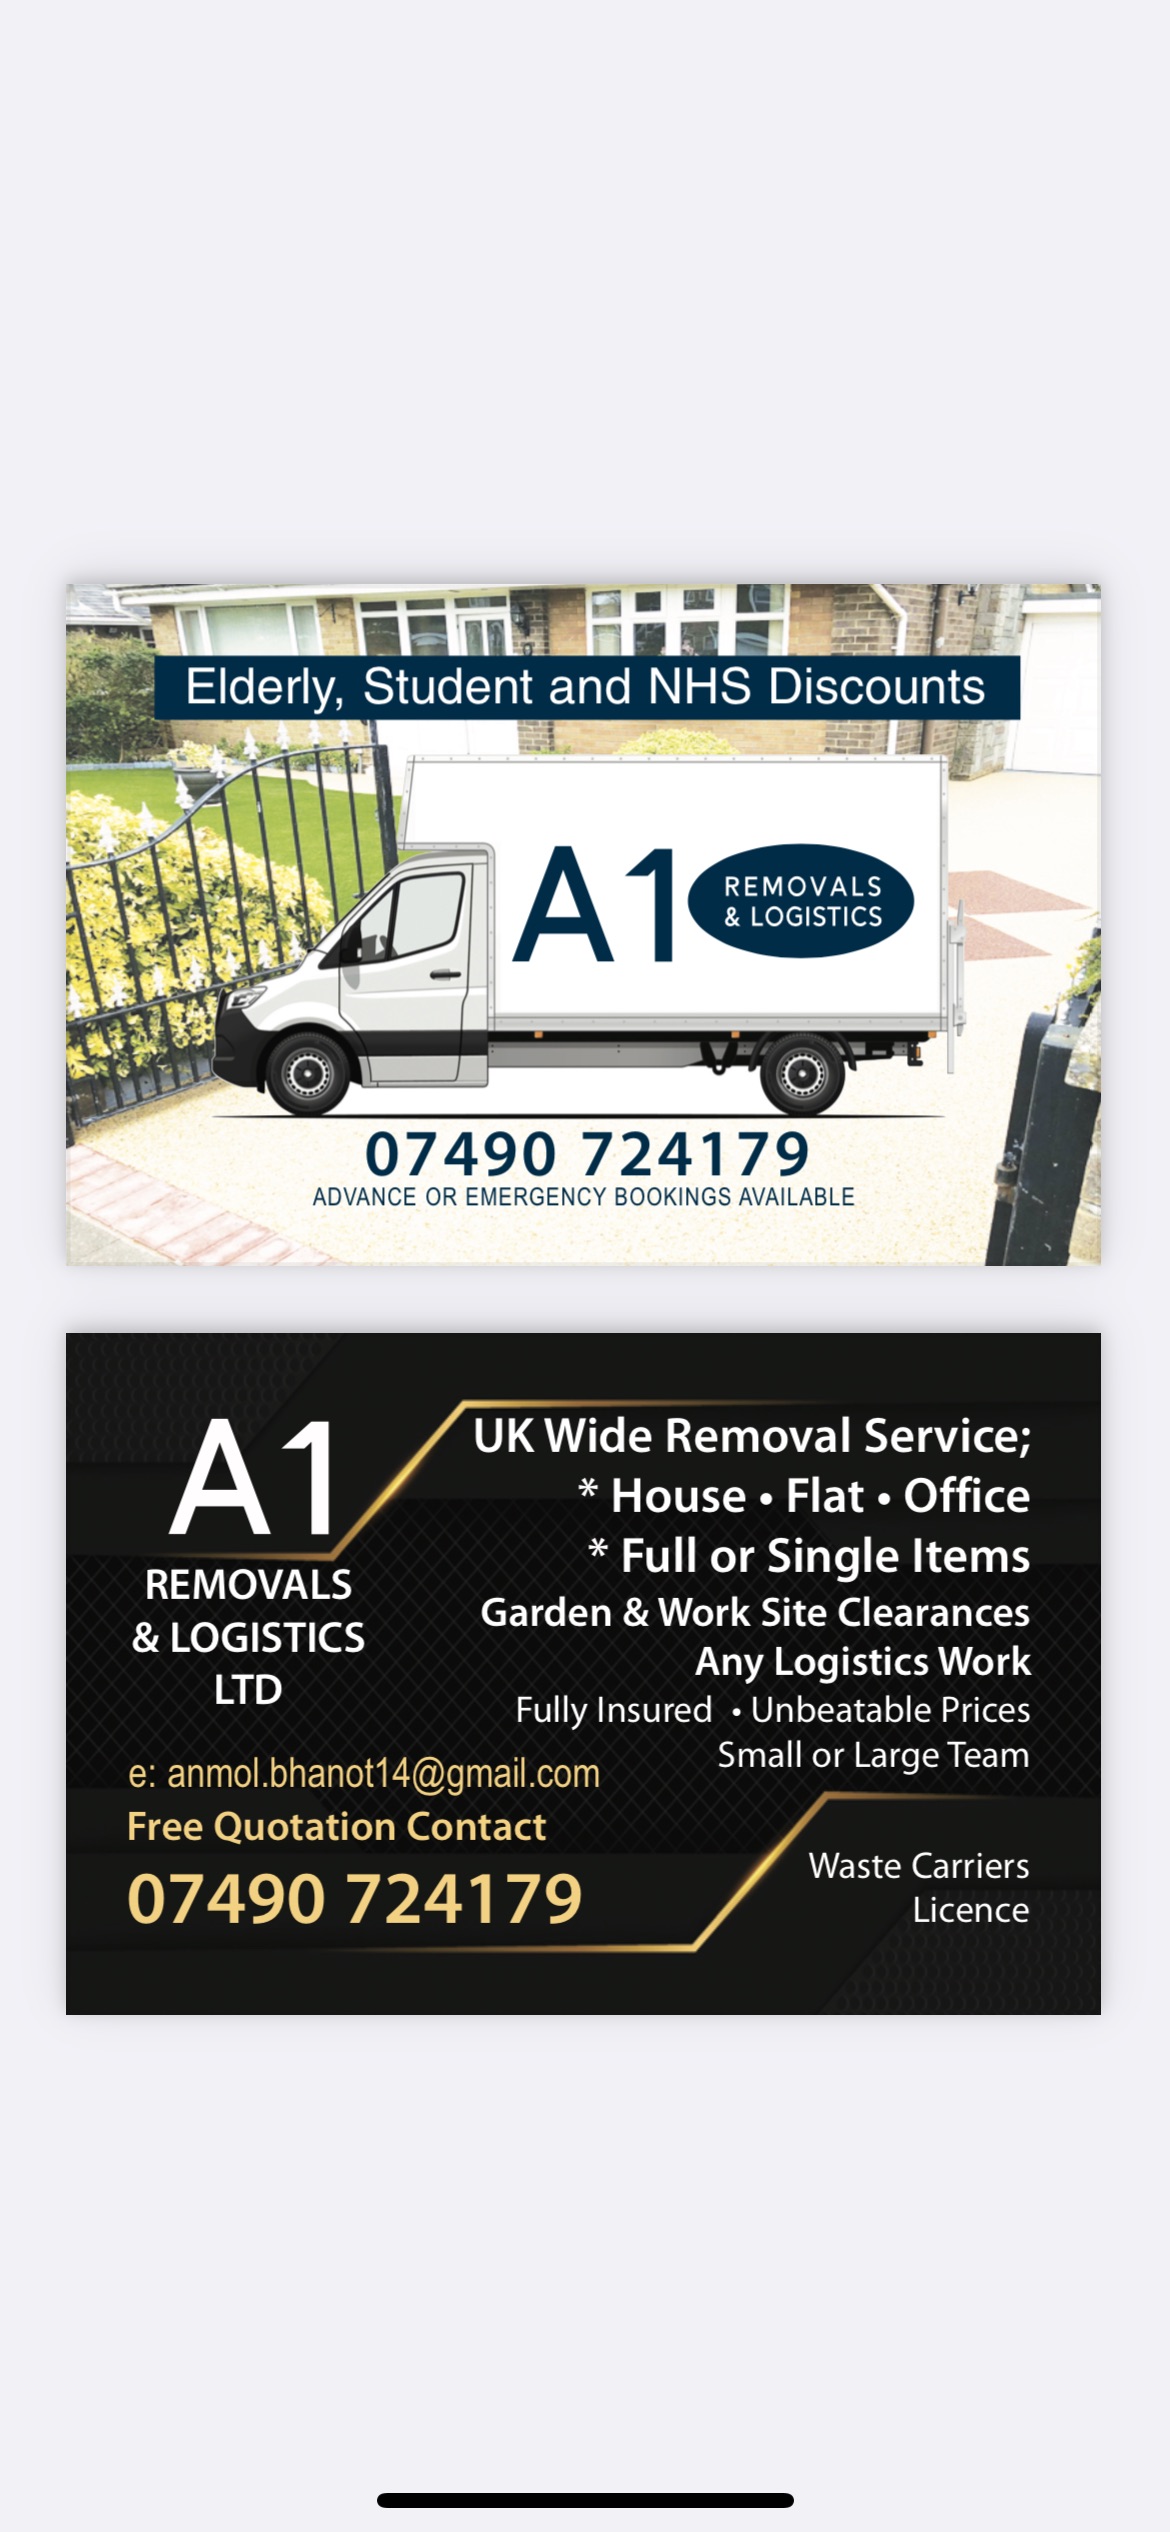 A1 removals & logistics Ltd logo